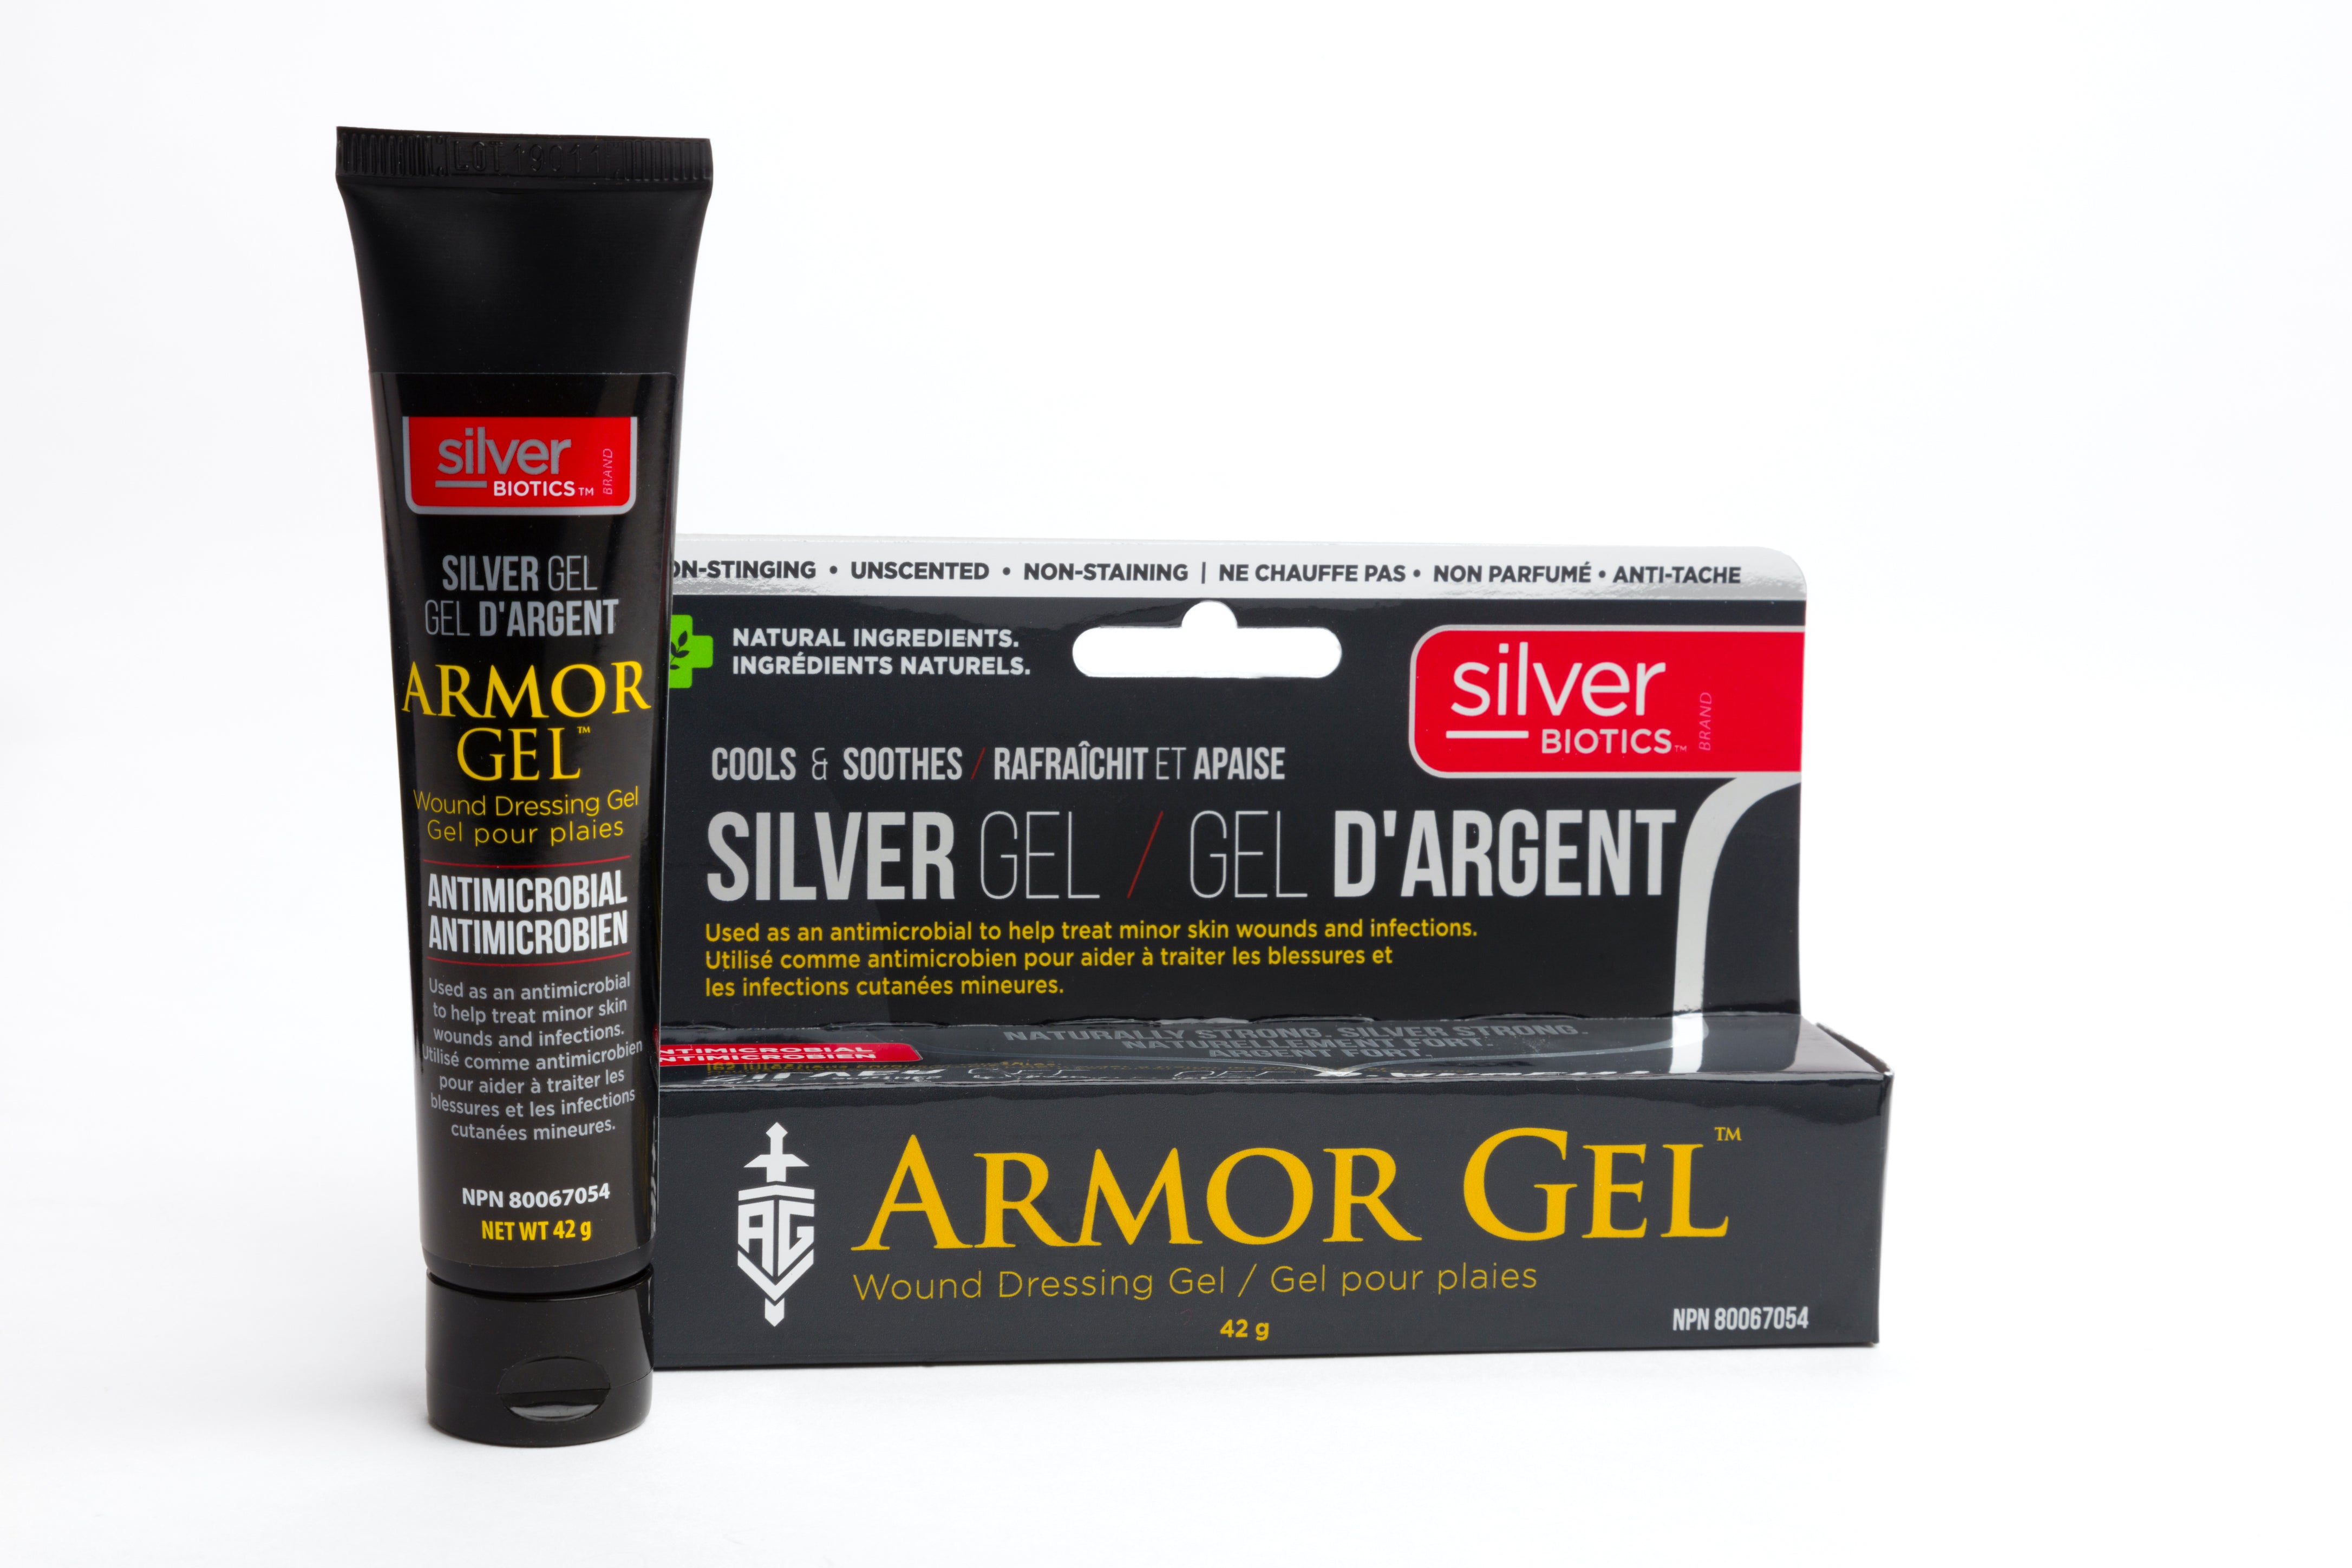 Silver Biotics Armor Gel Silver Gel 42g